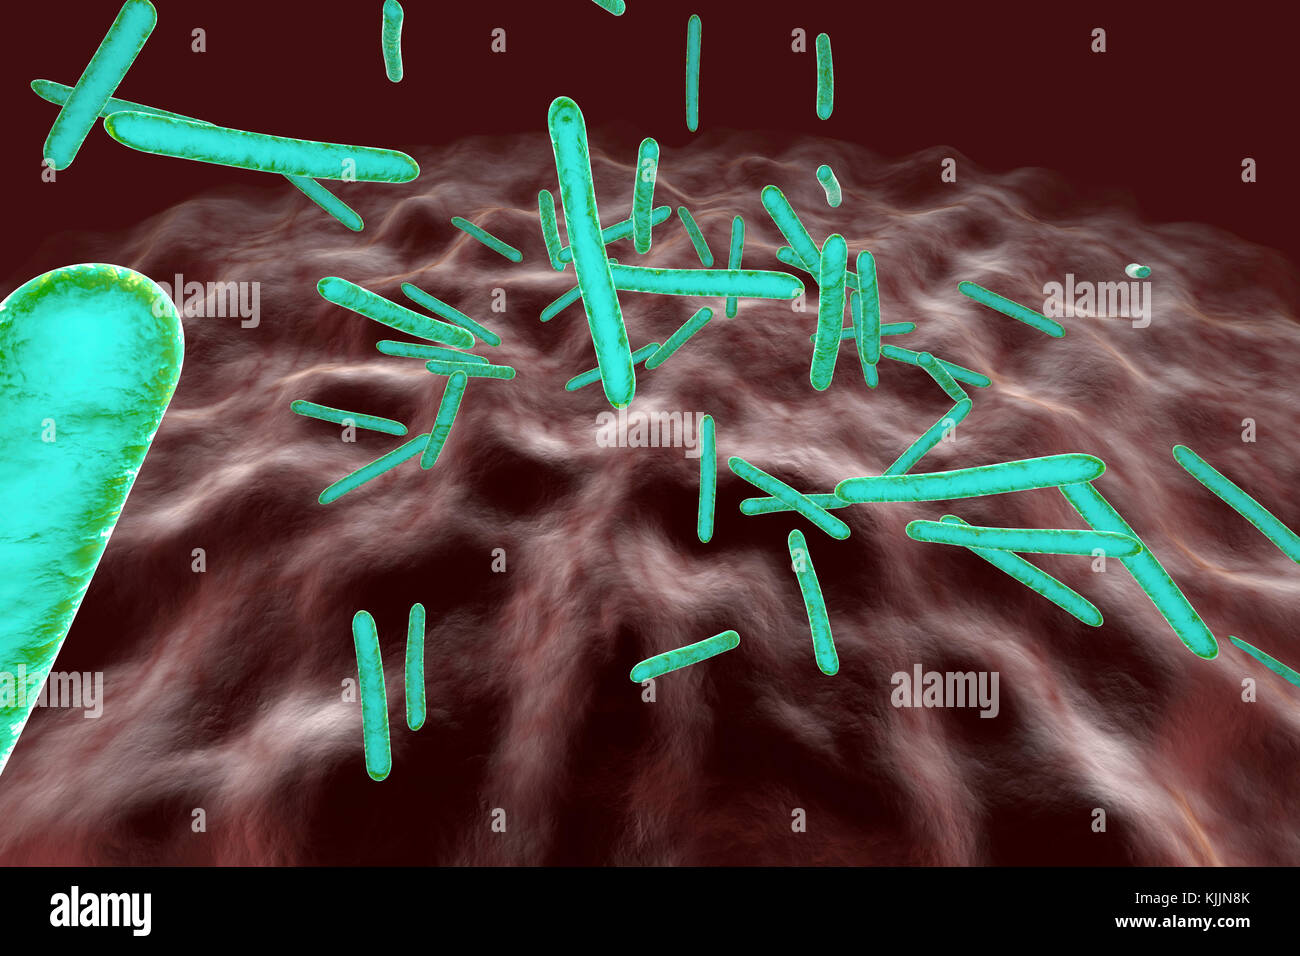 Gerenderten 3D-Illustration, Visualisierung von Tuberkulose Bakterien in einen Organismus Stockfoto